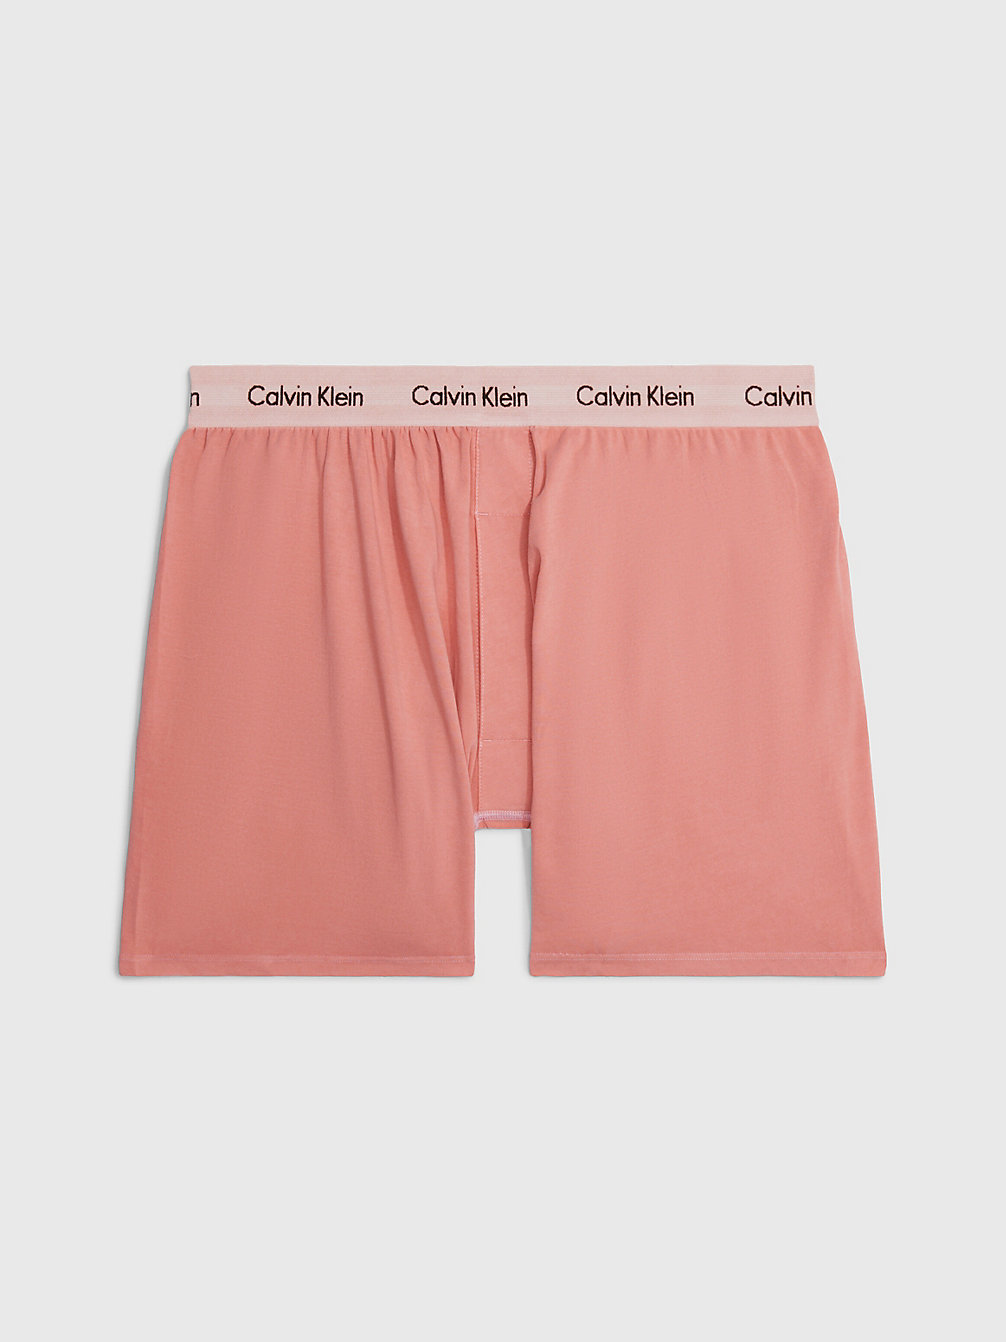 RUST Boxer - Modern Cotton undefined uomo Calvin Klein